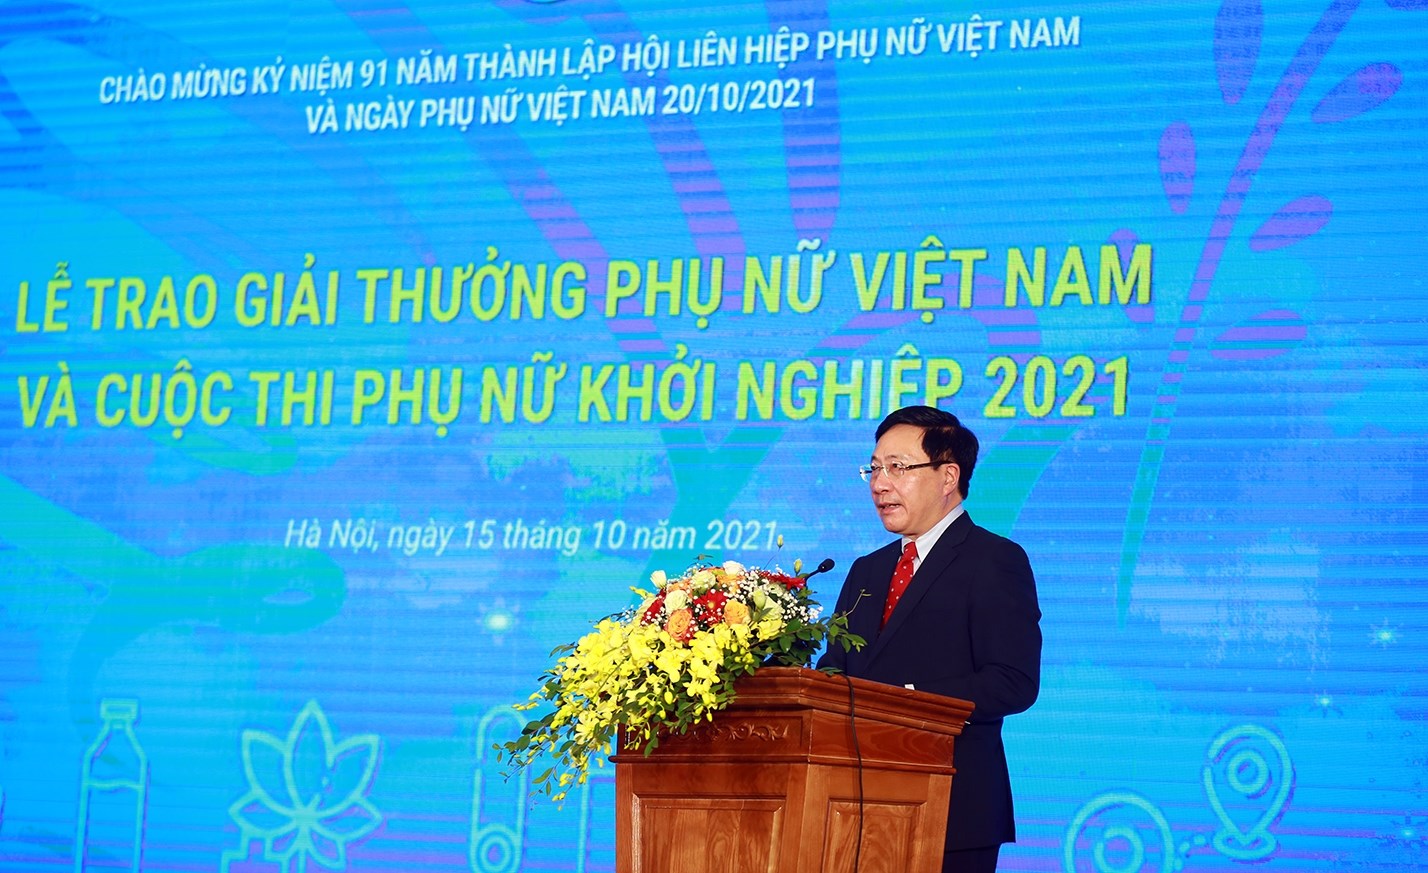 Phó Thủ tướng Thường trực Phạm Bình Minh khẳng định "Giải thưởng Phụ nữ Việt Nam" là minh chứng về sự phát triển không ngừng qua 91 năm của Hội LHPN Việt Nam. Ảnh: VGP/Hải Minh